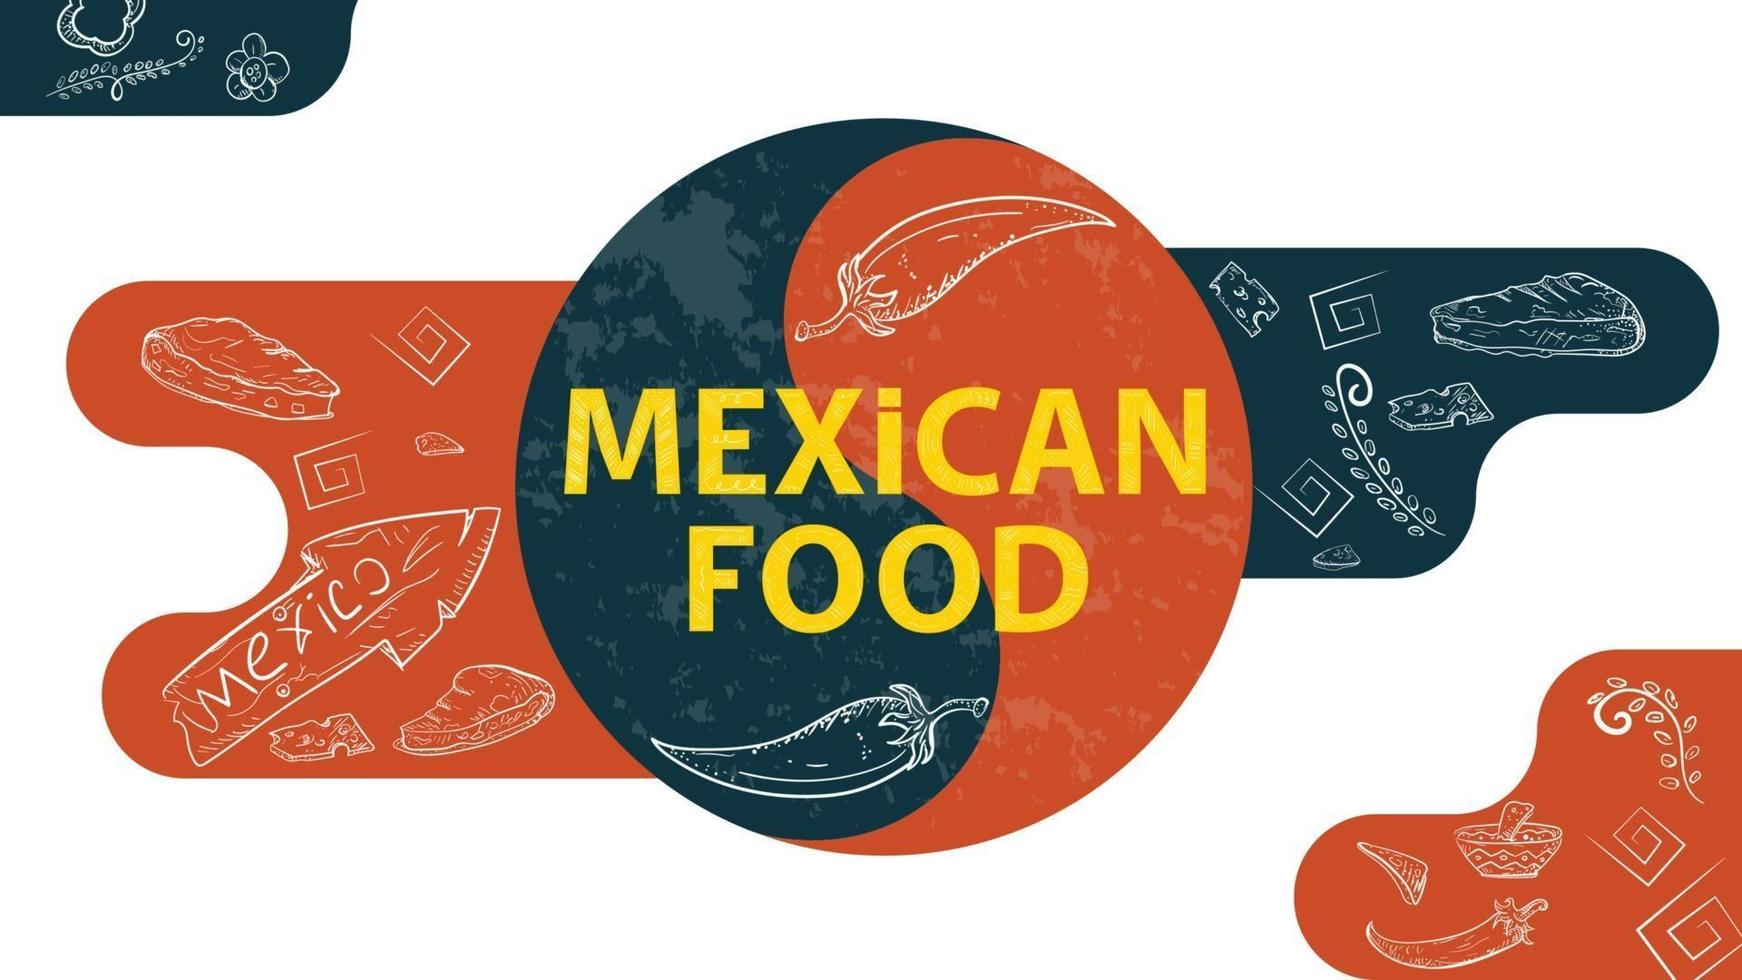 esboço de ilustração para sinal de equilíbrio de projeto com a inscrição comida mexicana pimenta quente sinal de estrada indicador de direção taco tortillas vetor